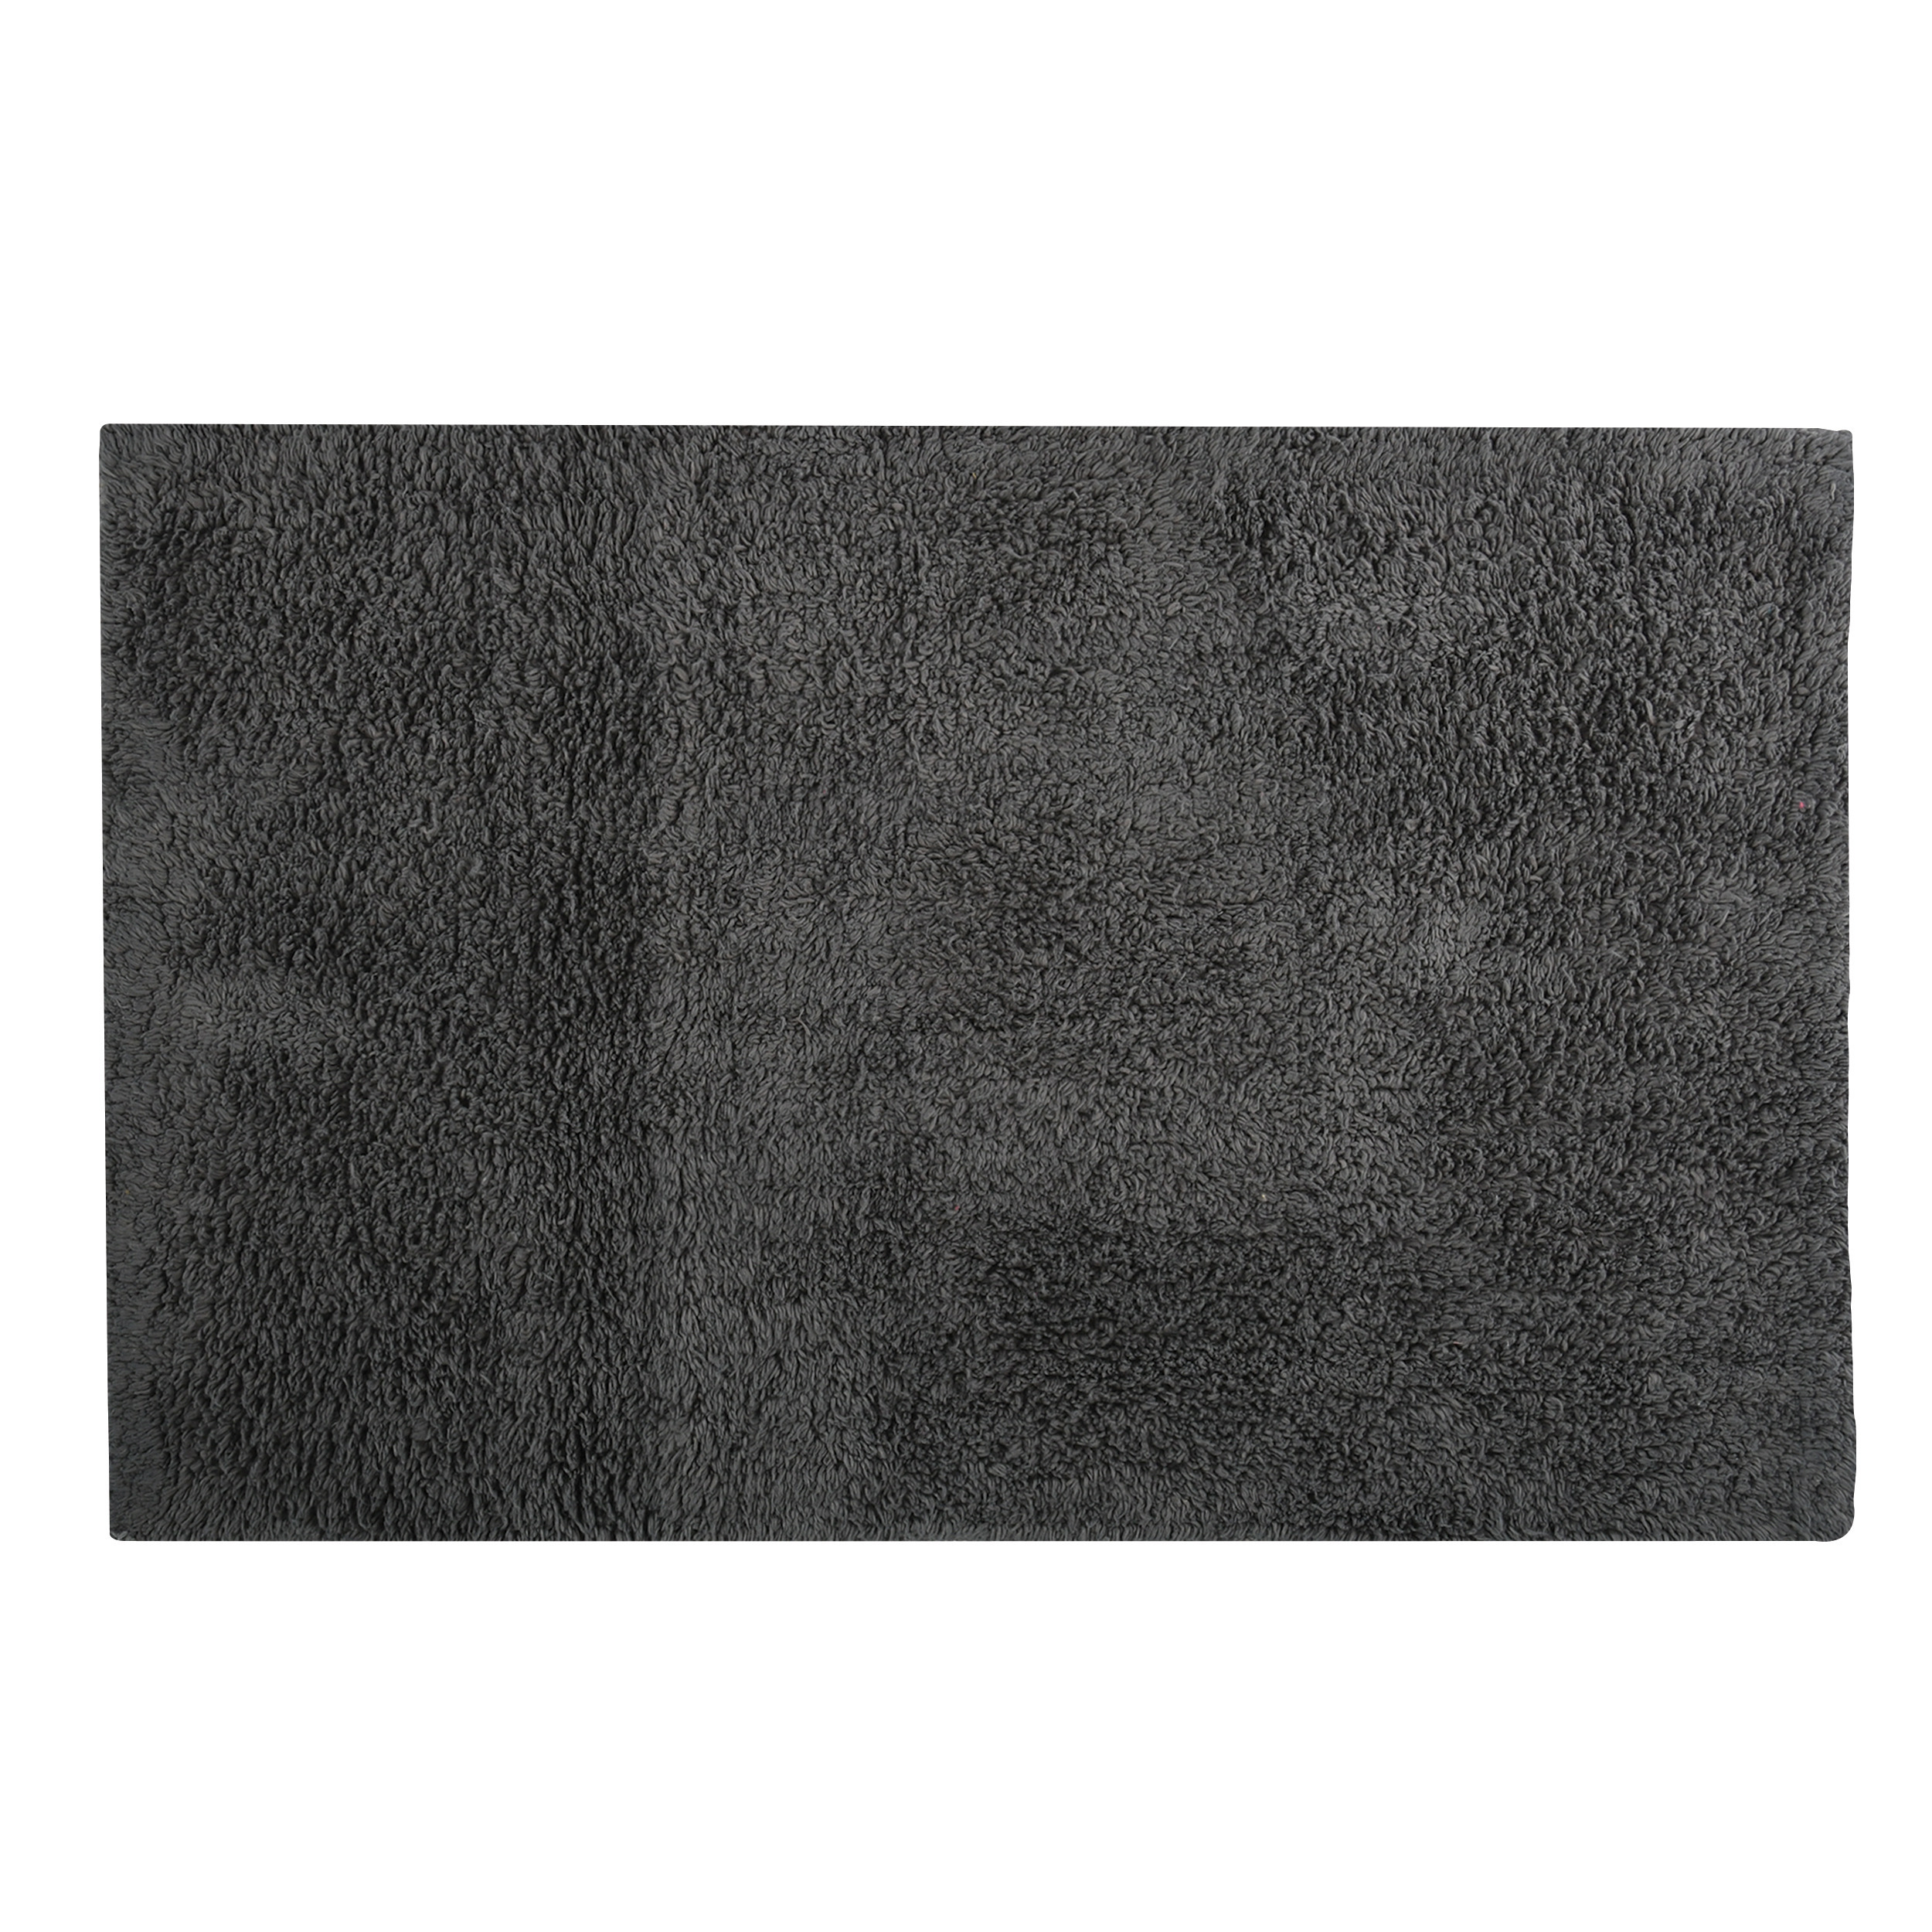 Badkamerkleedje-badmat tapijtje voor op de vloer donkergrijs 40 x 60 cm